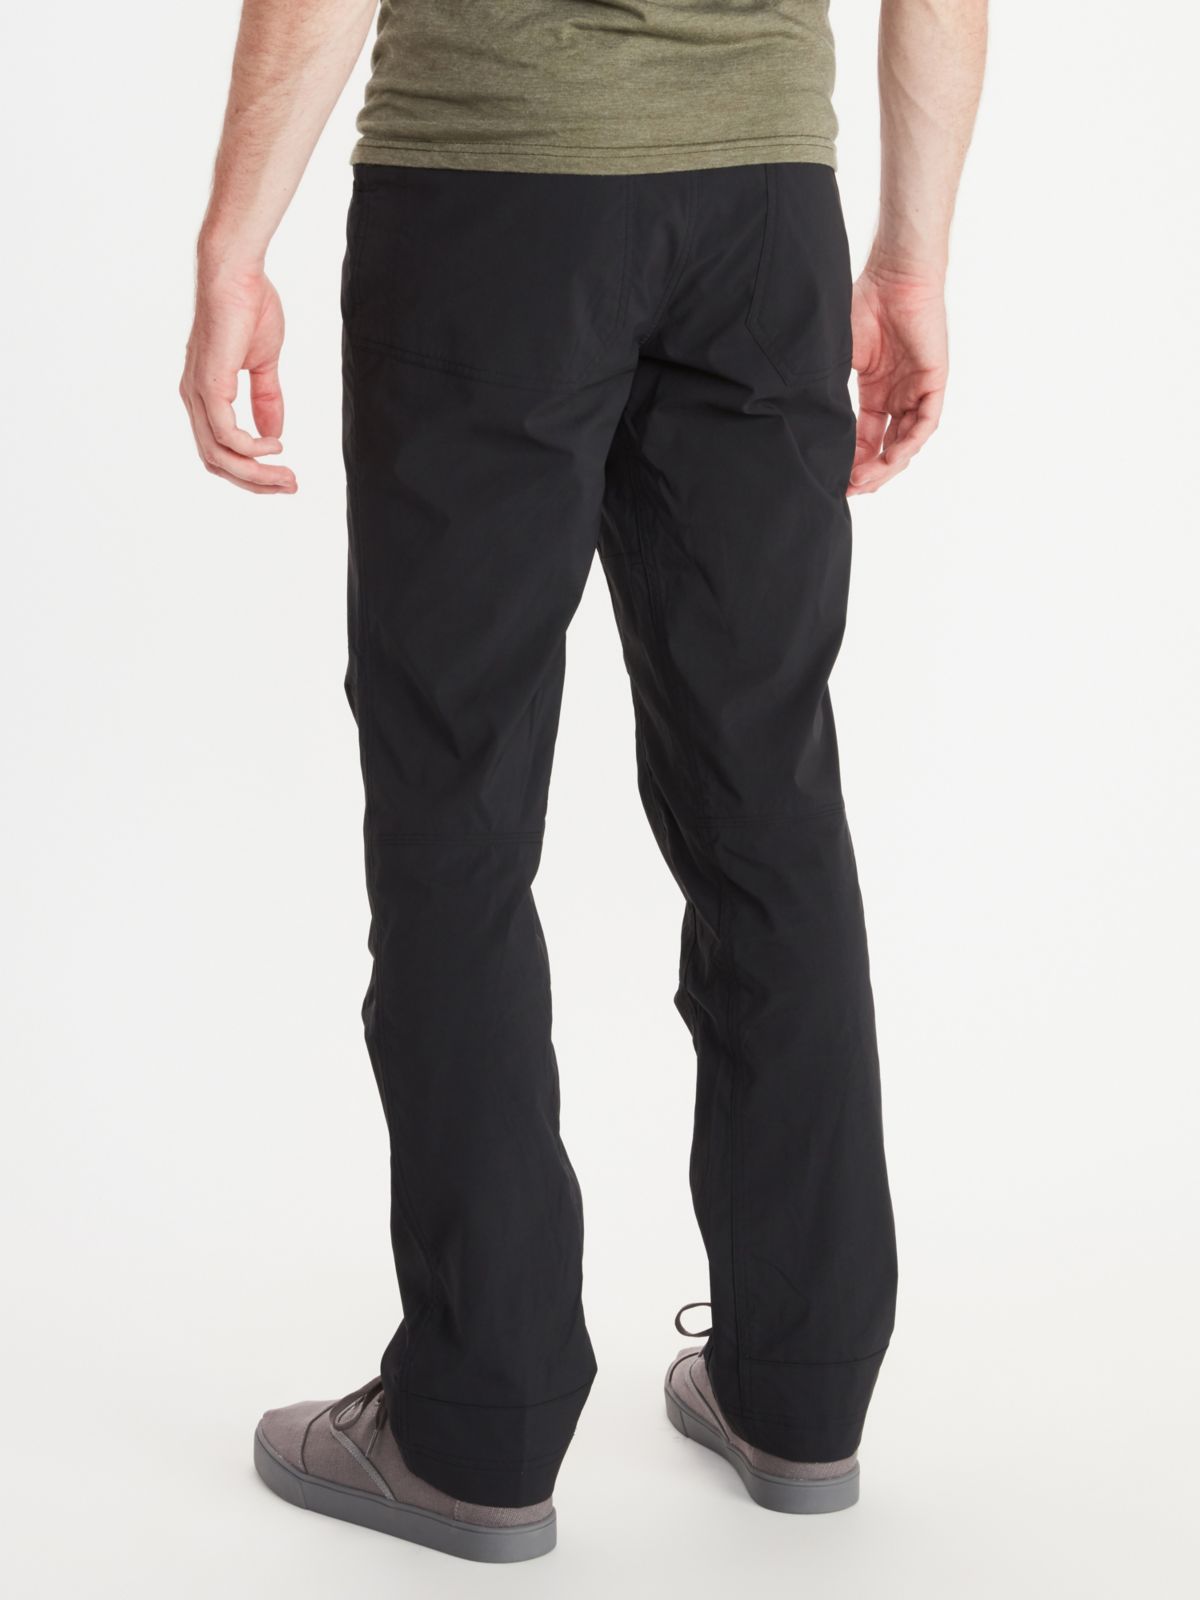 back view of men's risdon pants